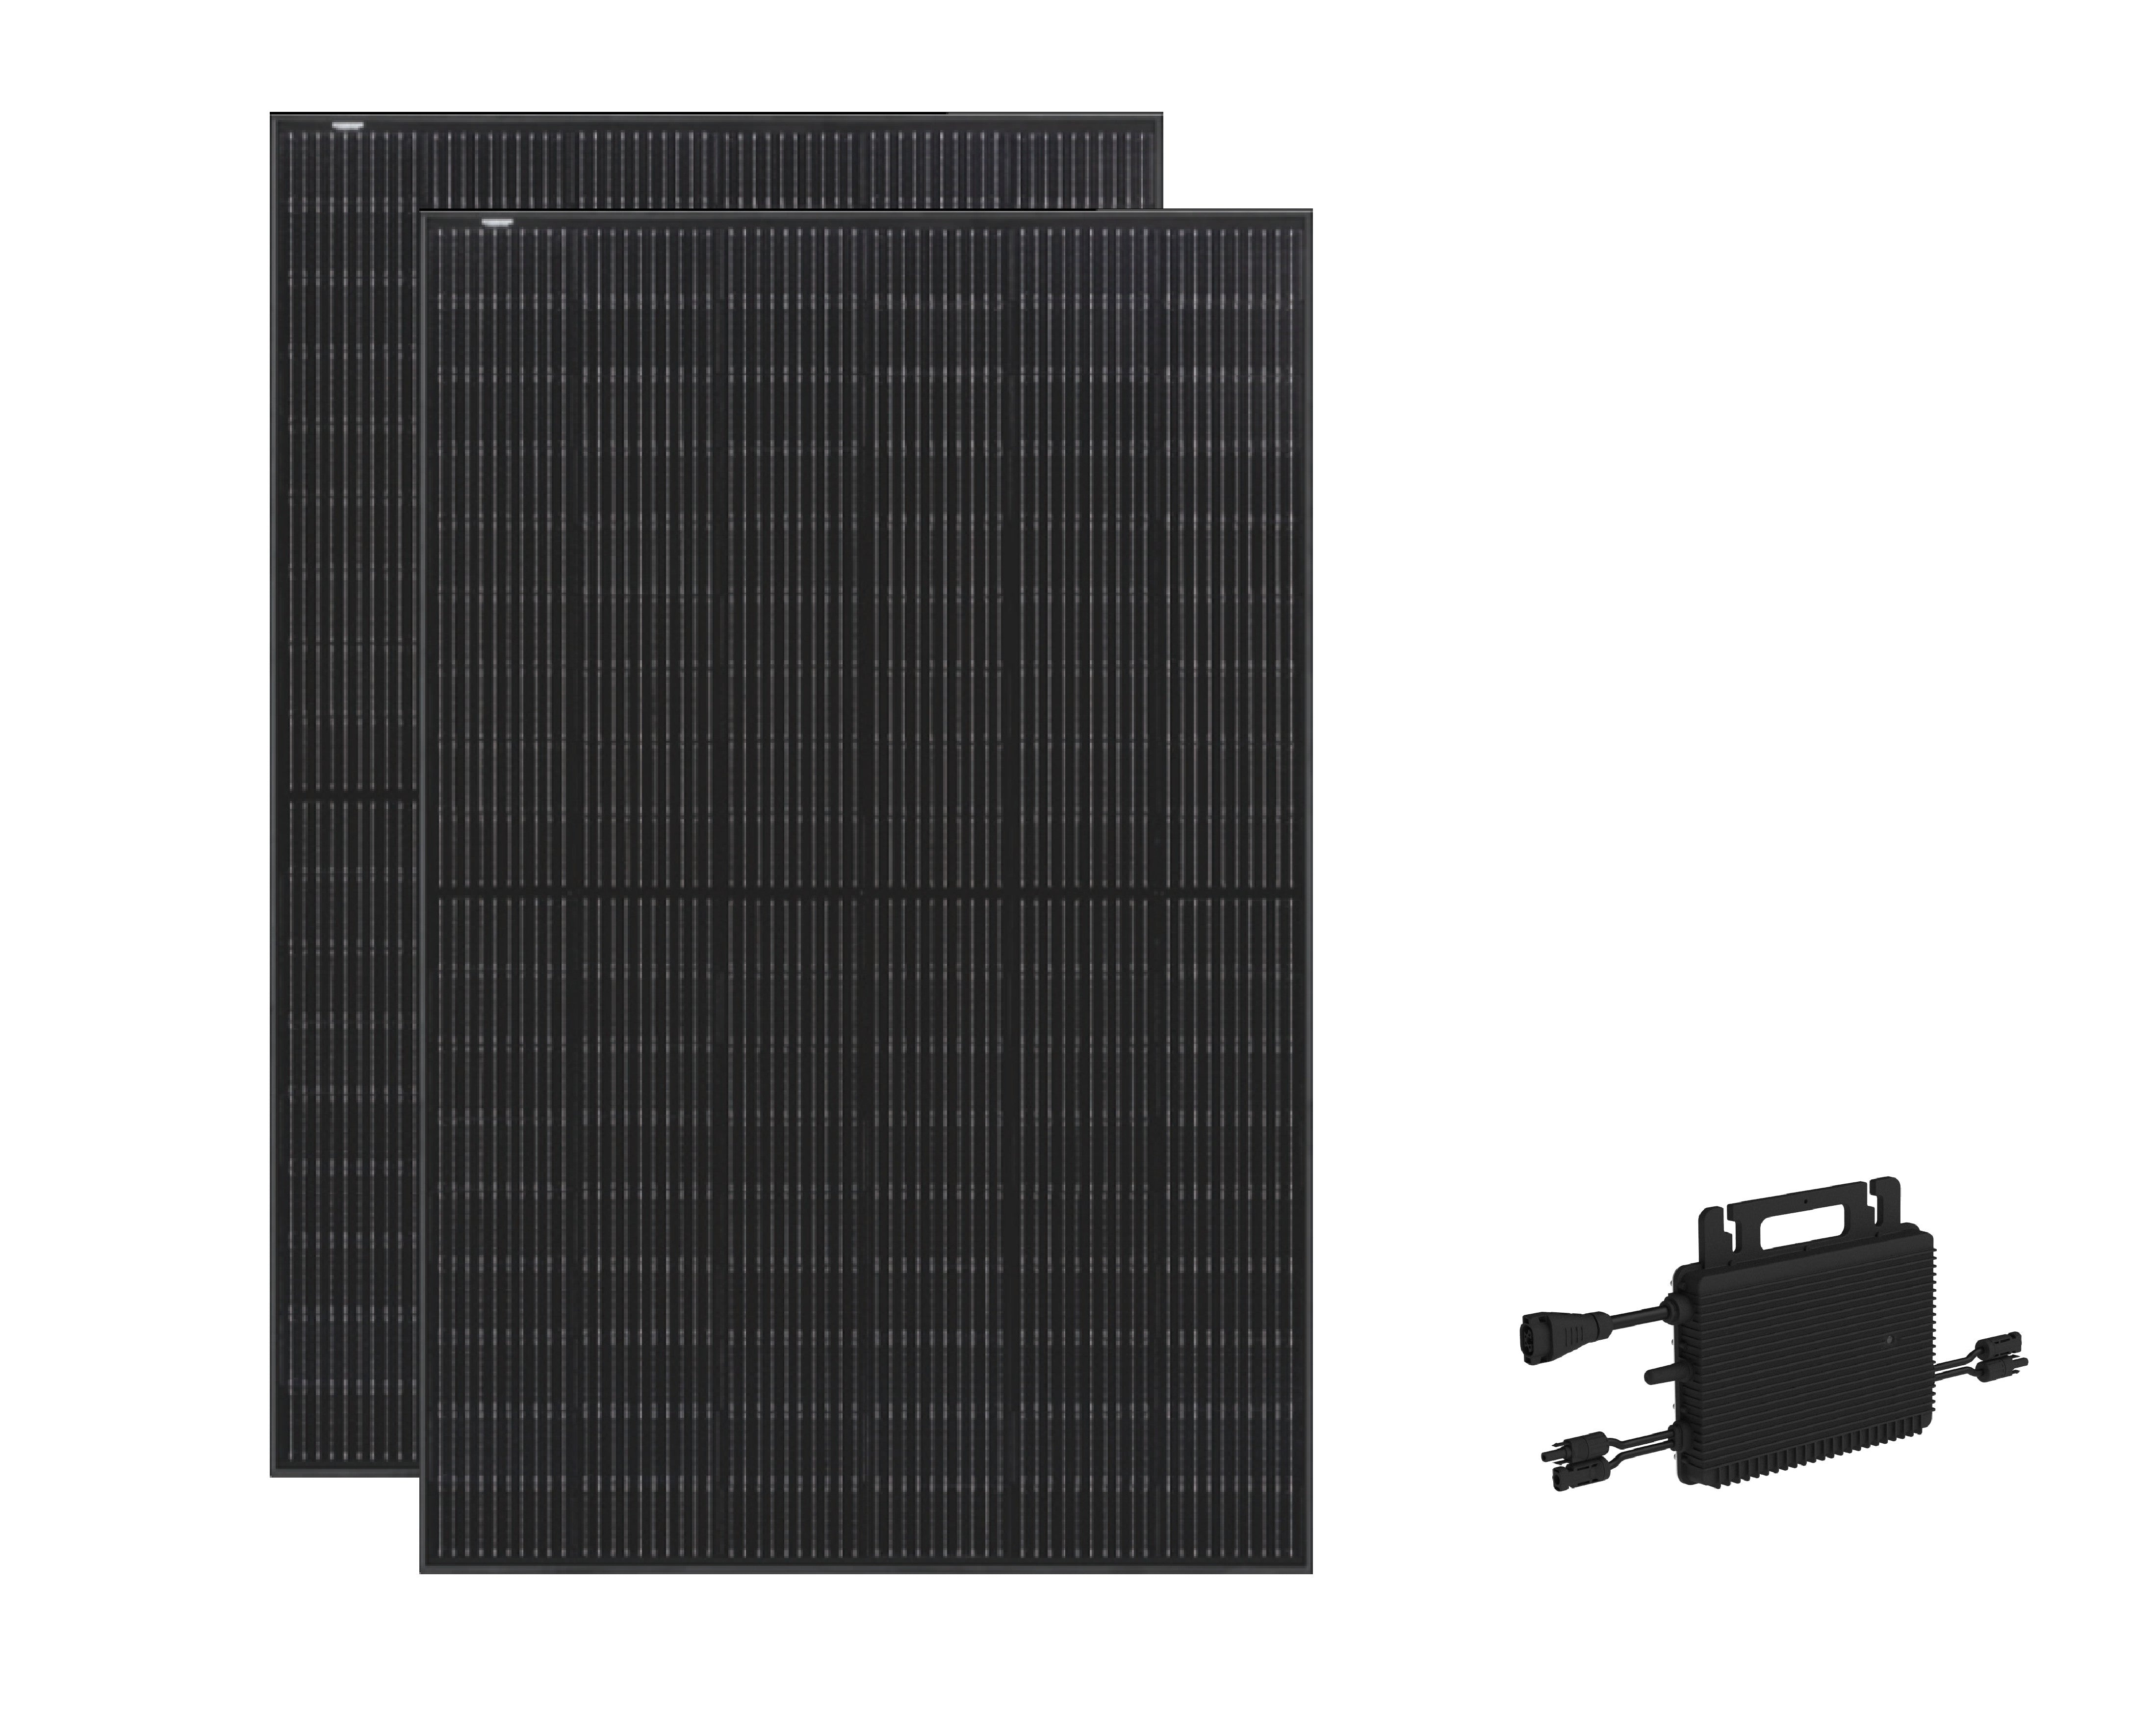 Balkonkraftwerk Komplettset - 2 x 400W full black Solarmodul, Hoymile,  429,00 €